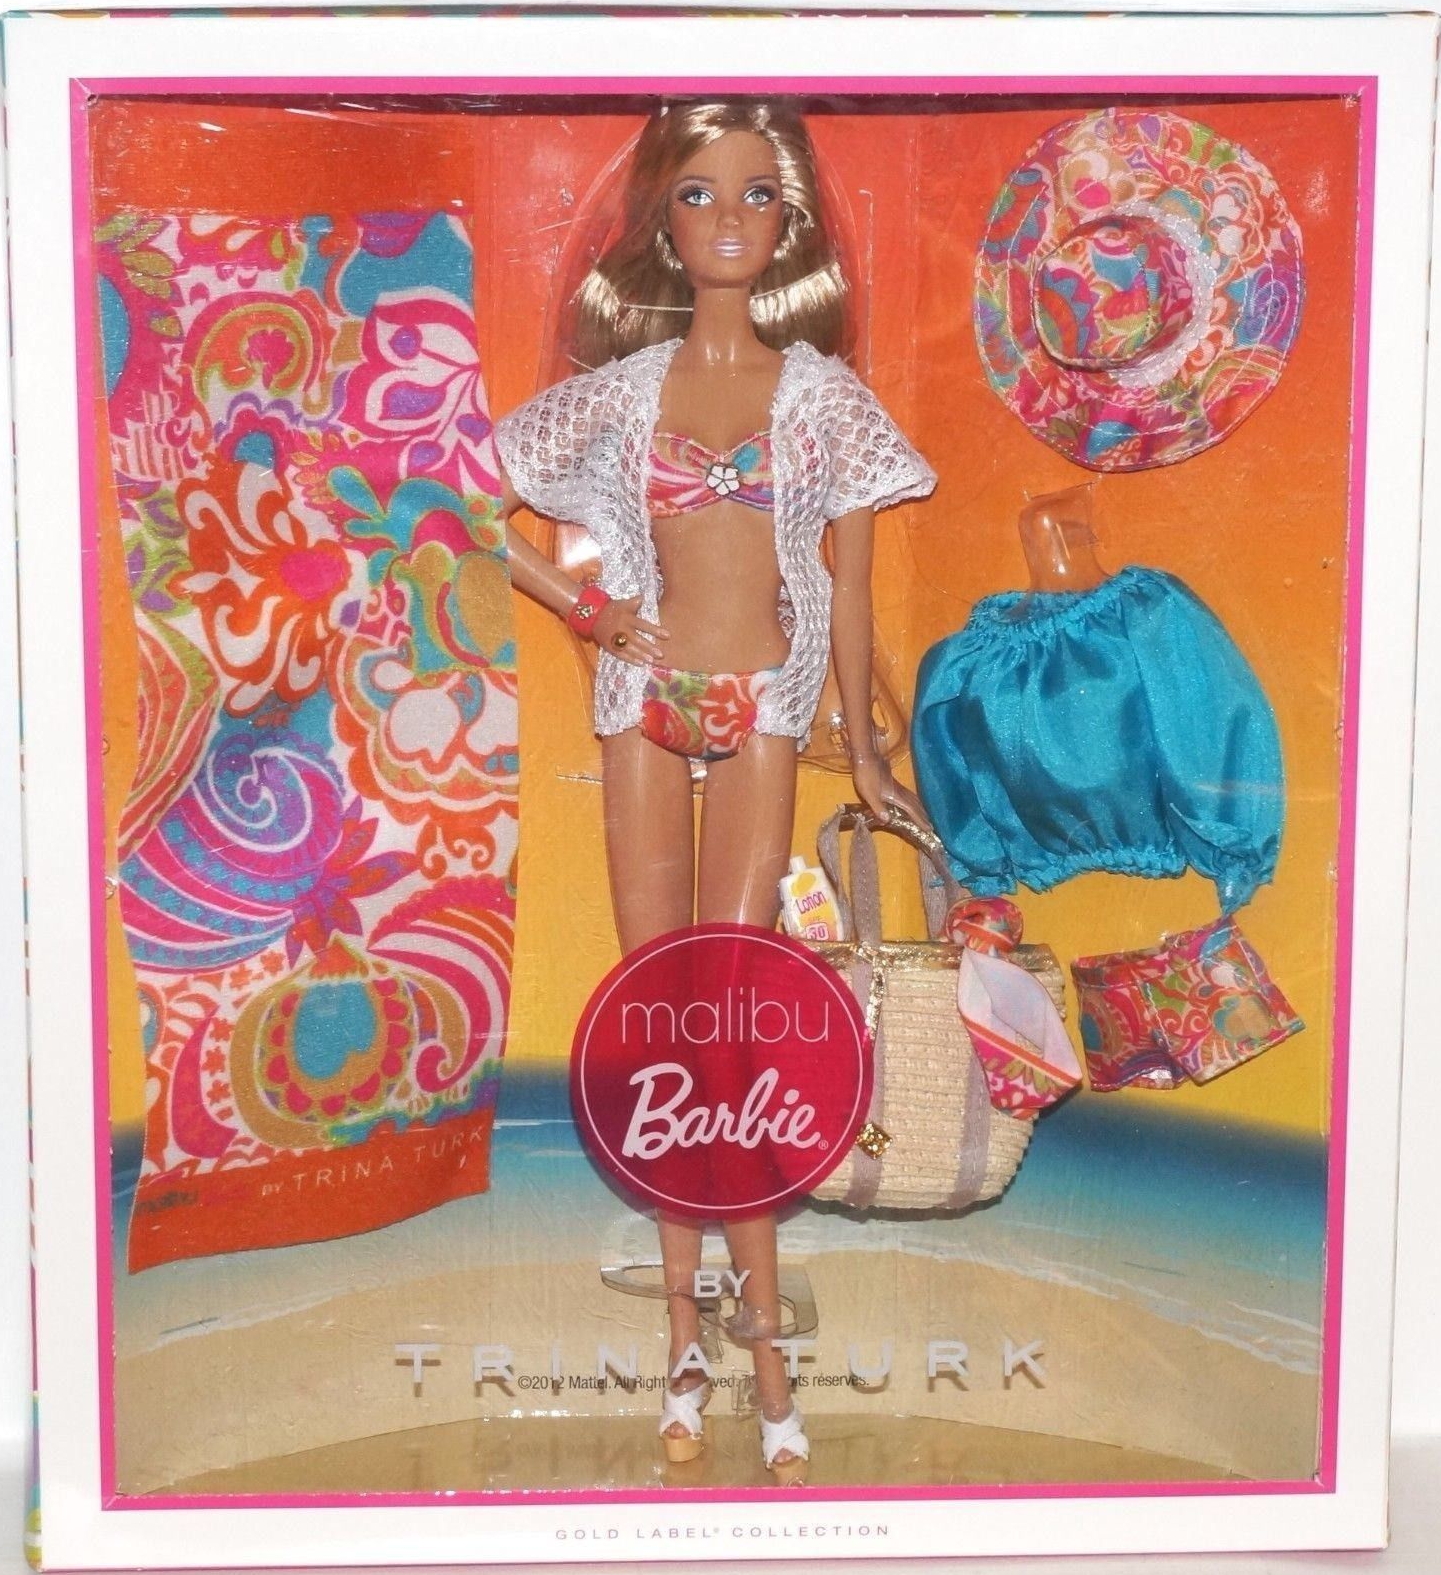 malibu Barbie BY TRINA TURK - www.agdsicilia.it